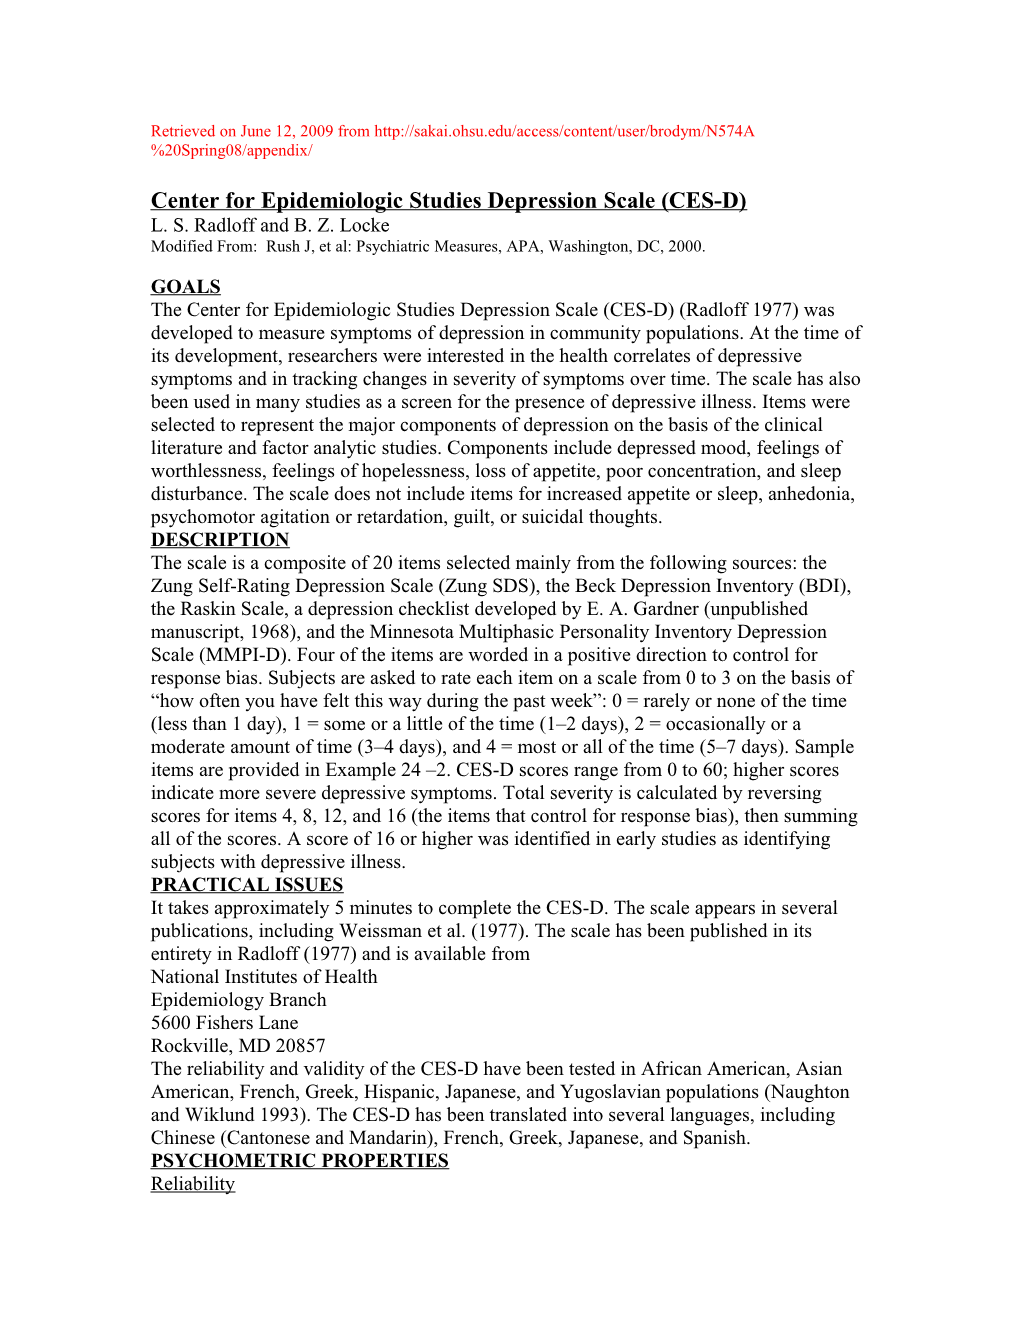 Center for Epidemiologic Studies Depression Scale (CES-D)